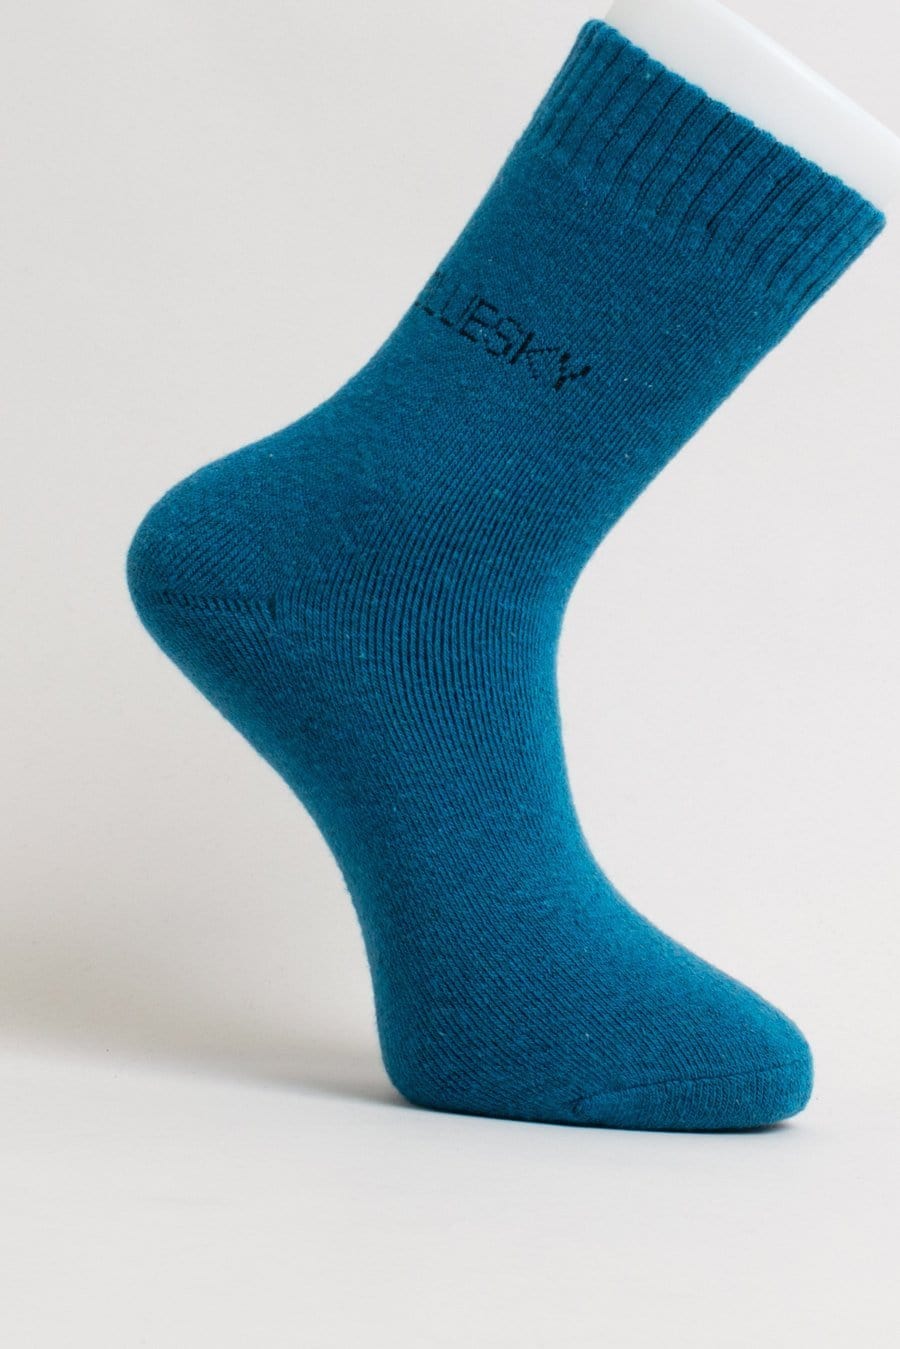 Blue Sky Women&#39;s Socks Teal / M Women&#39;s Socks - Merino Wool